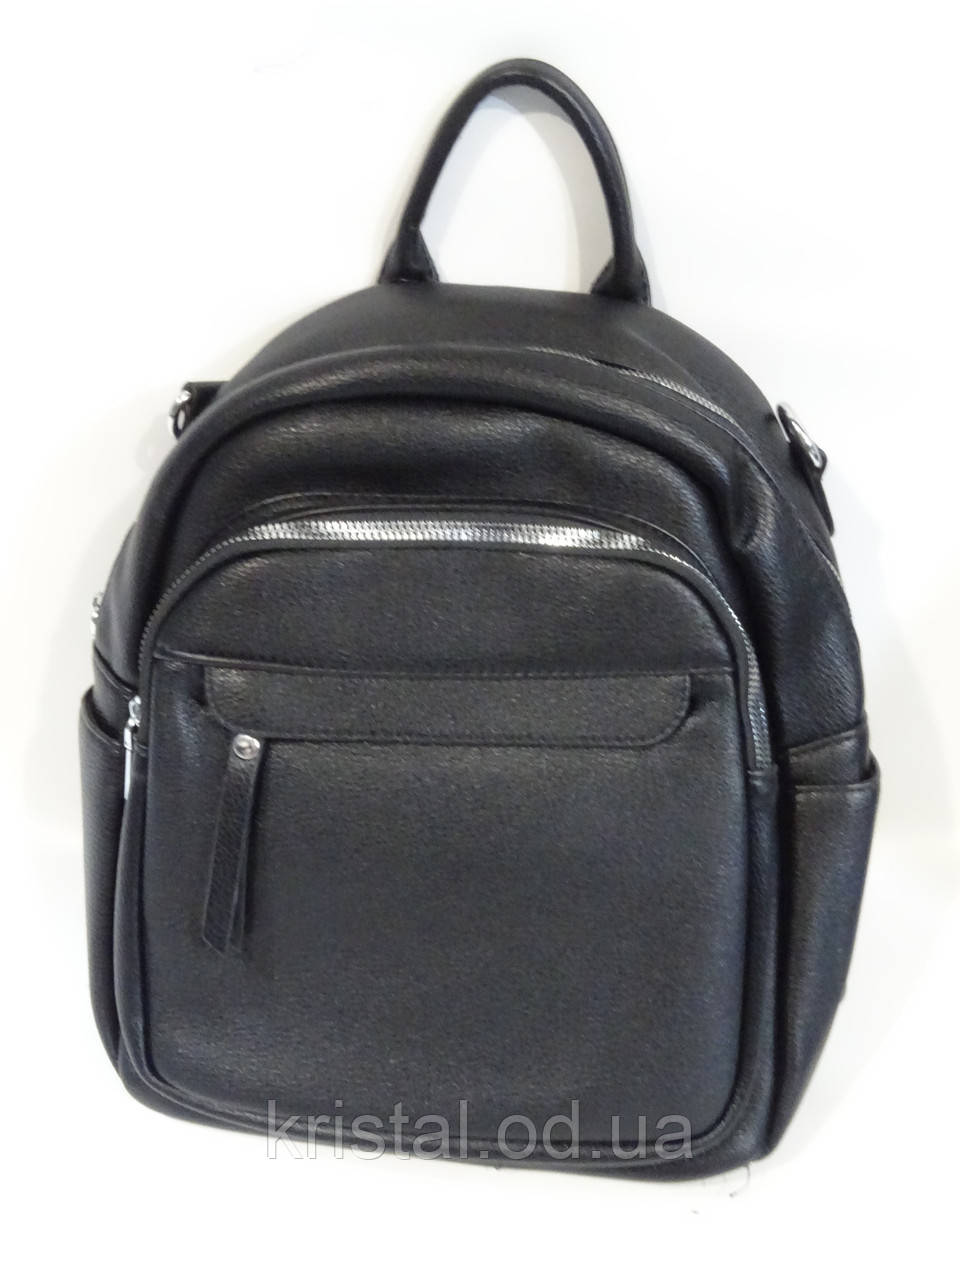 Рюкзак жіночий оптом 24*30 см. серії "Premium" No18526